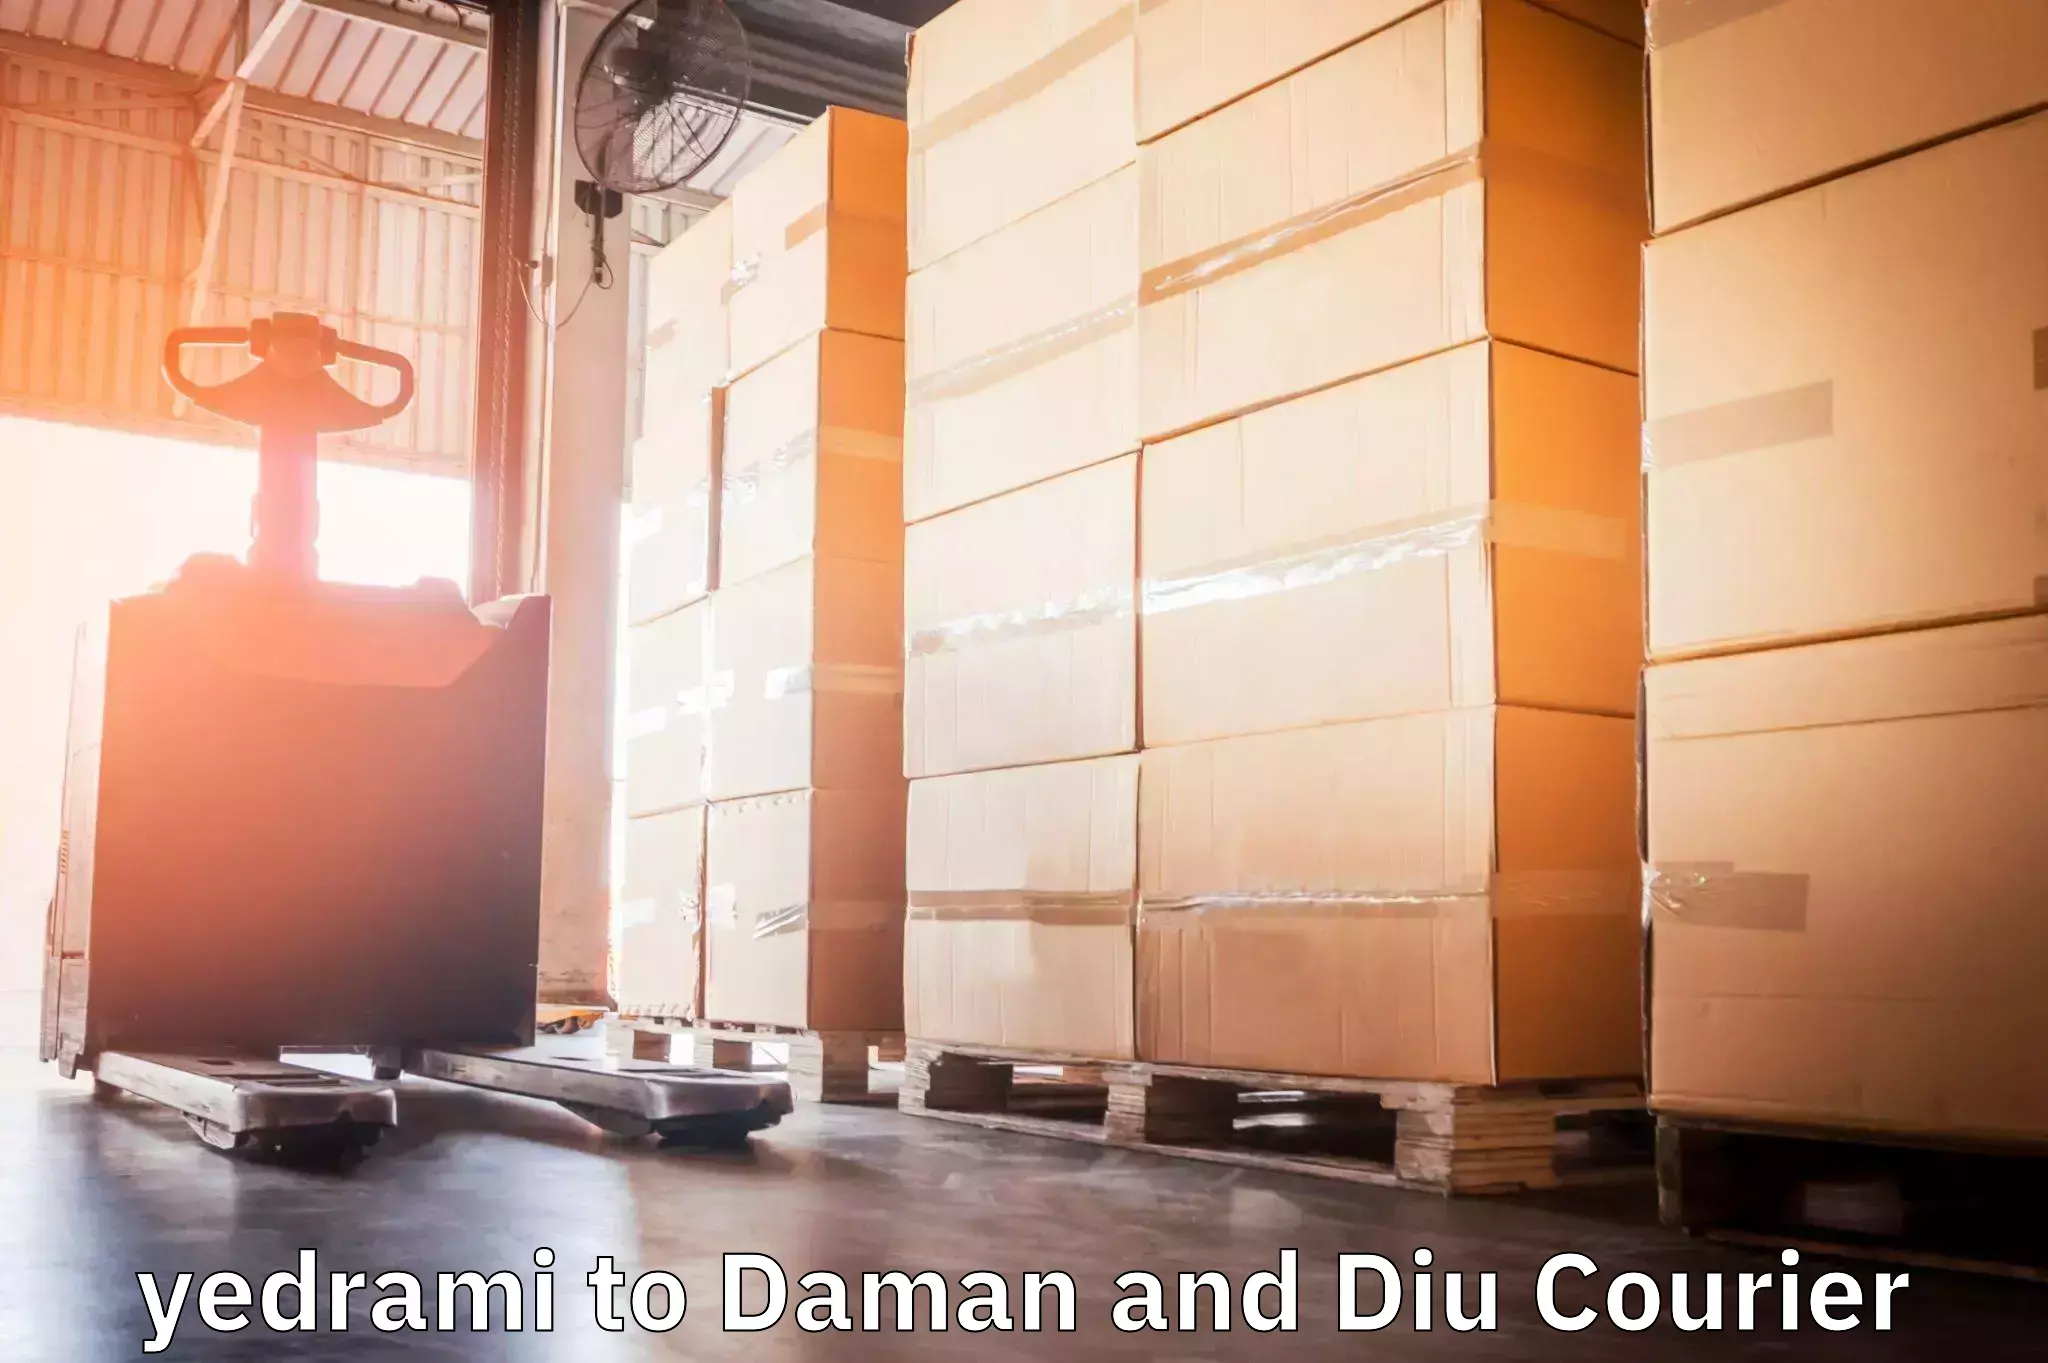 Seamless shipping service yedrami to Daman